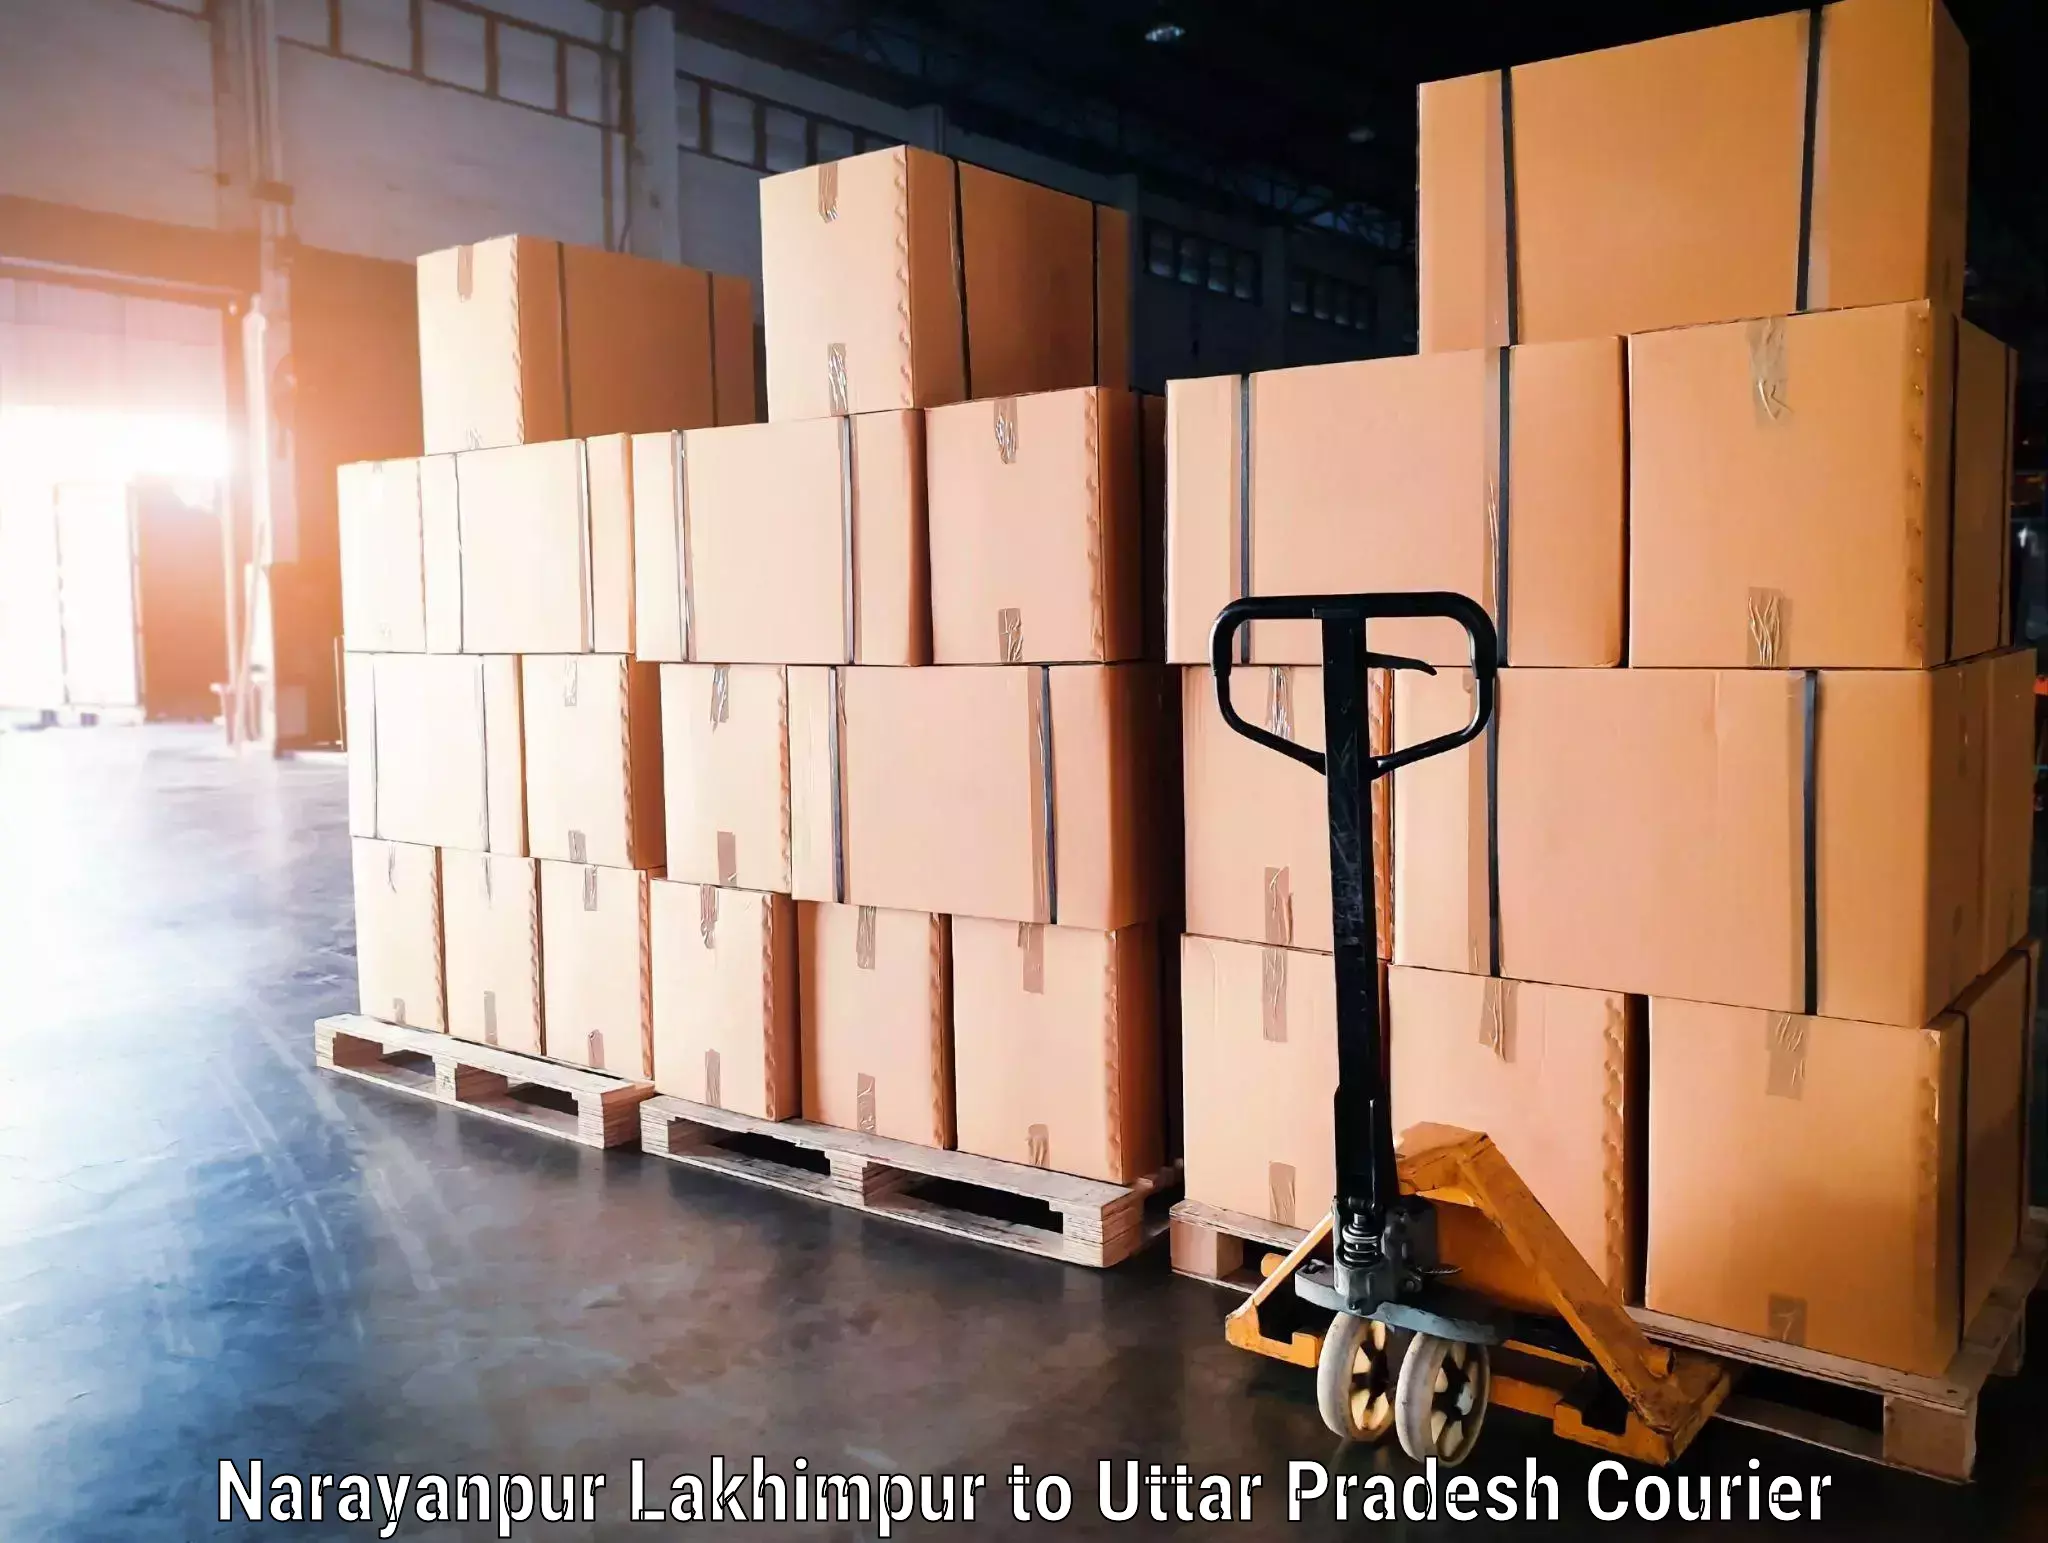 Baggage transport technology Narayanpur Lakhimpur to Phoolpur